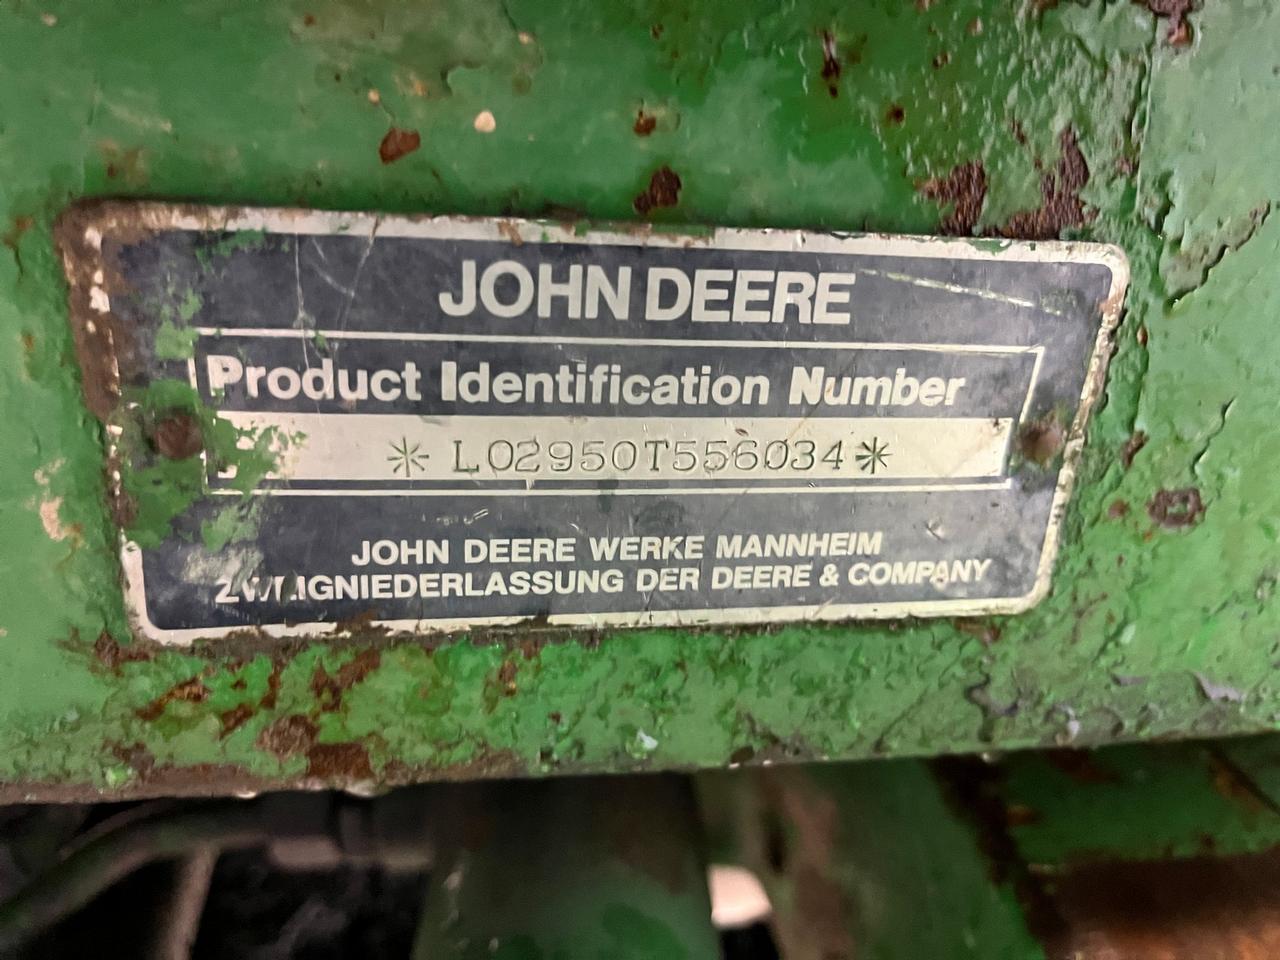 John Deere 2950 Tractor